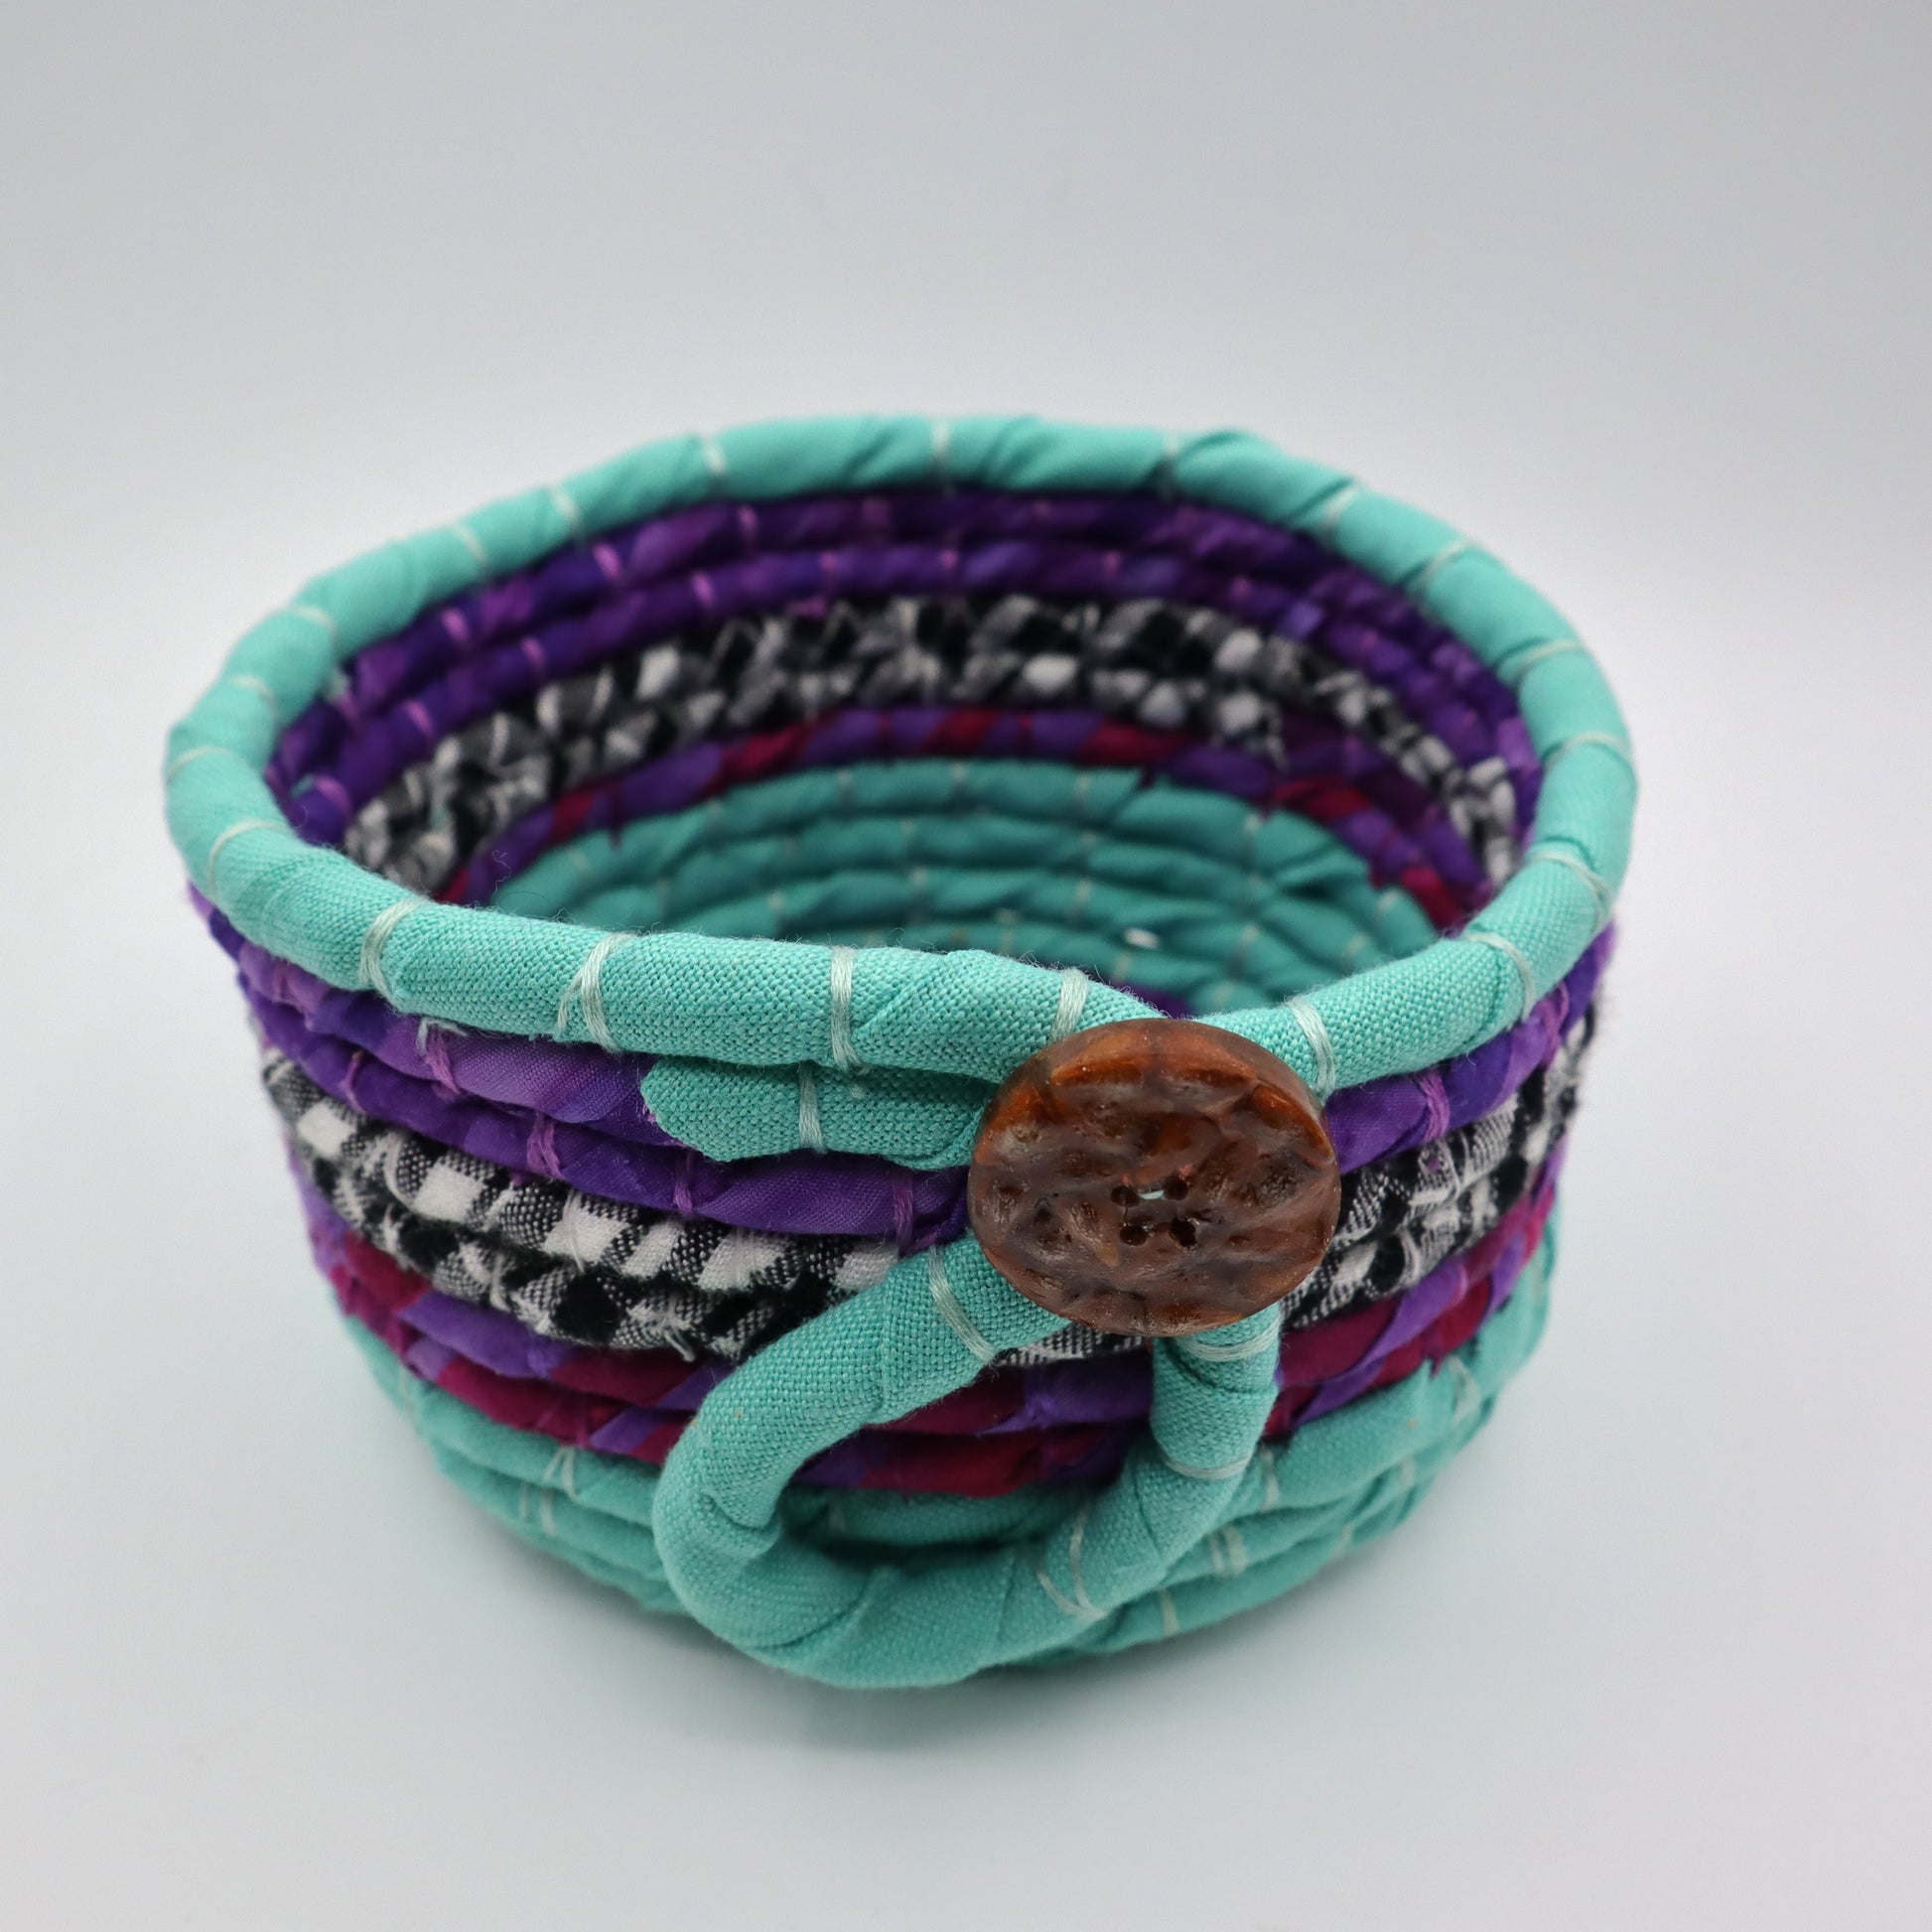 Fabric Yarn Bowls - Small - Natural Fibre Arts